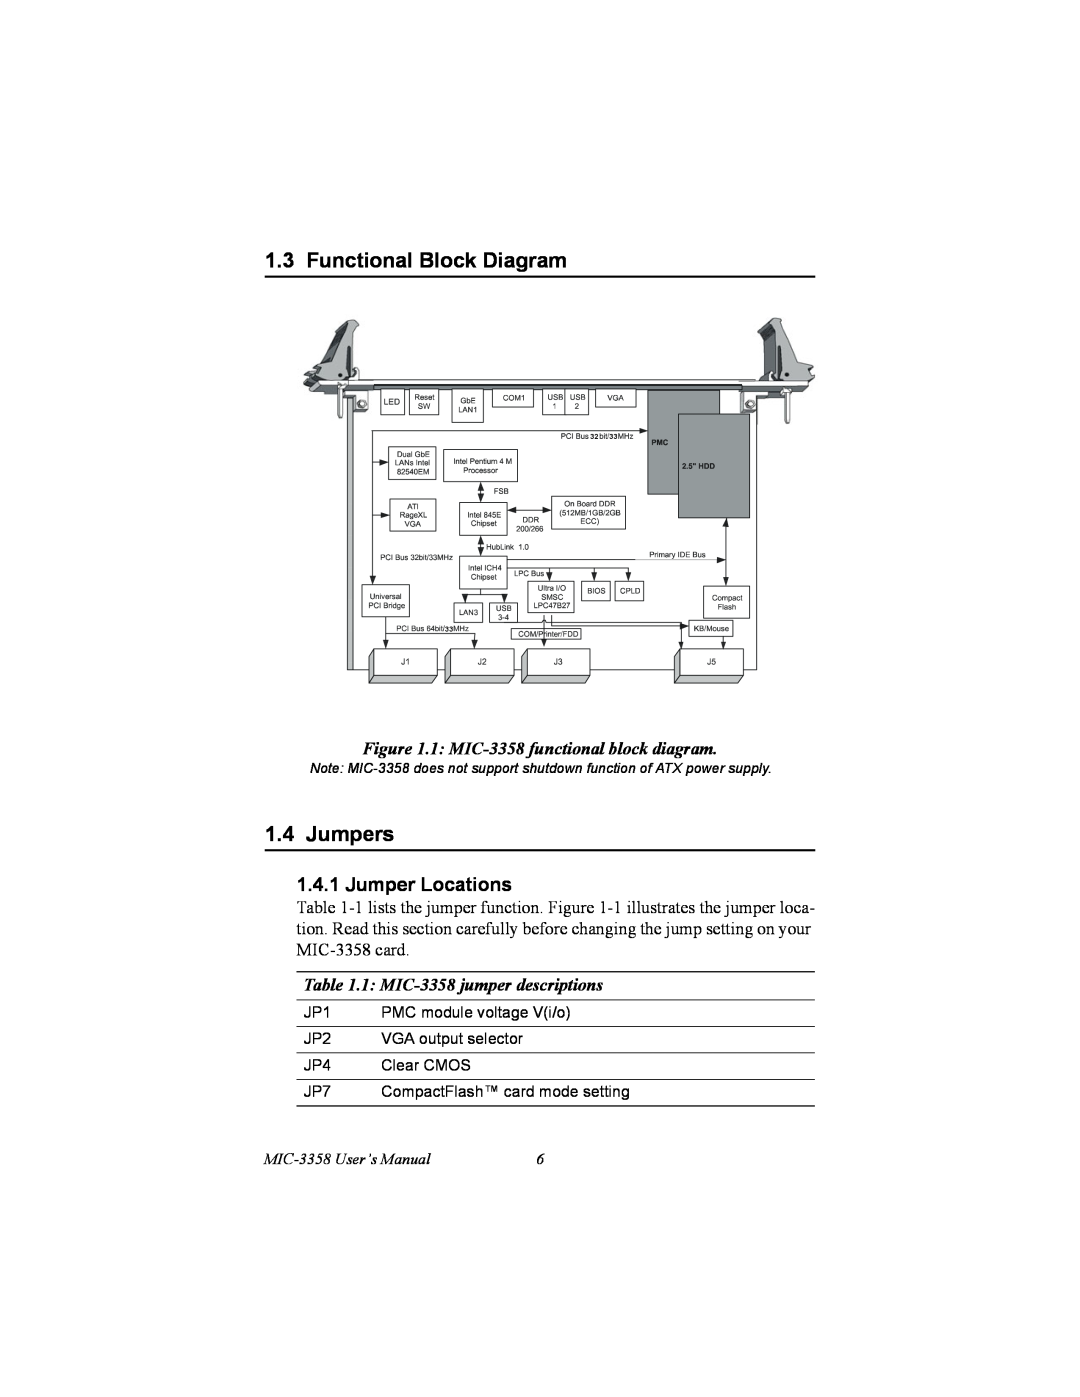 Intel Functional Block Diagram, Jumpers, Jumper Locations, 1 MIC-3358 functional block diagram, MIC-3358 User’s Manual 